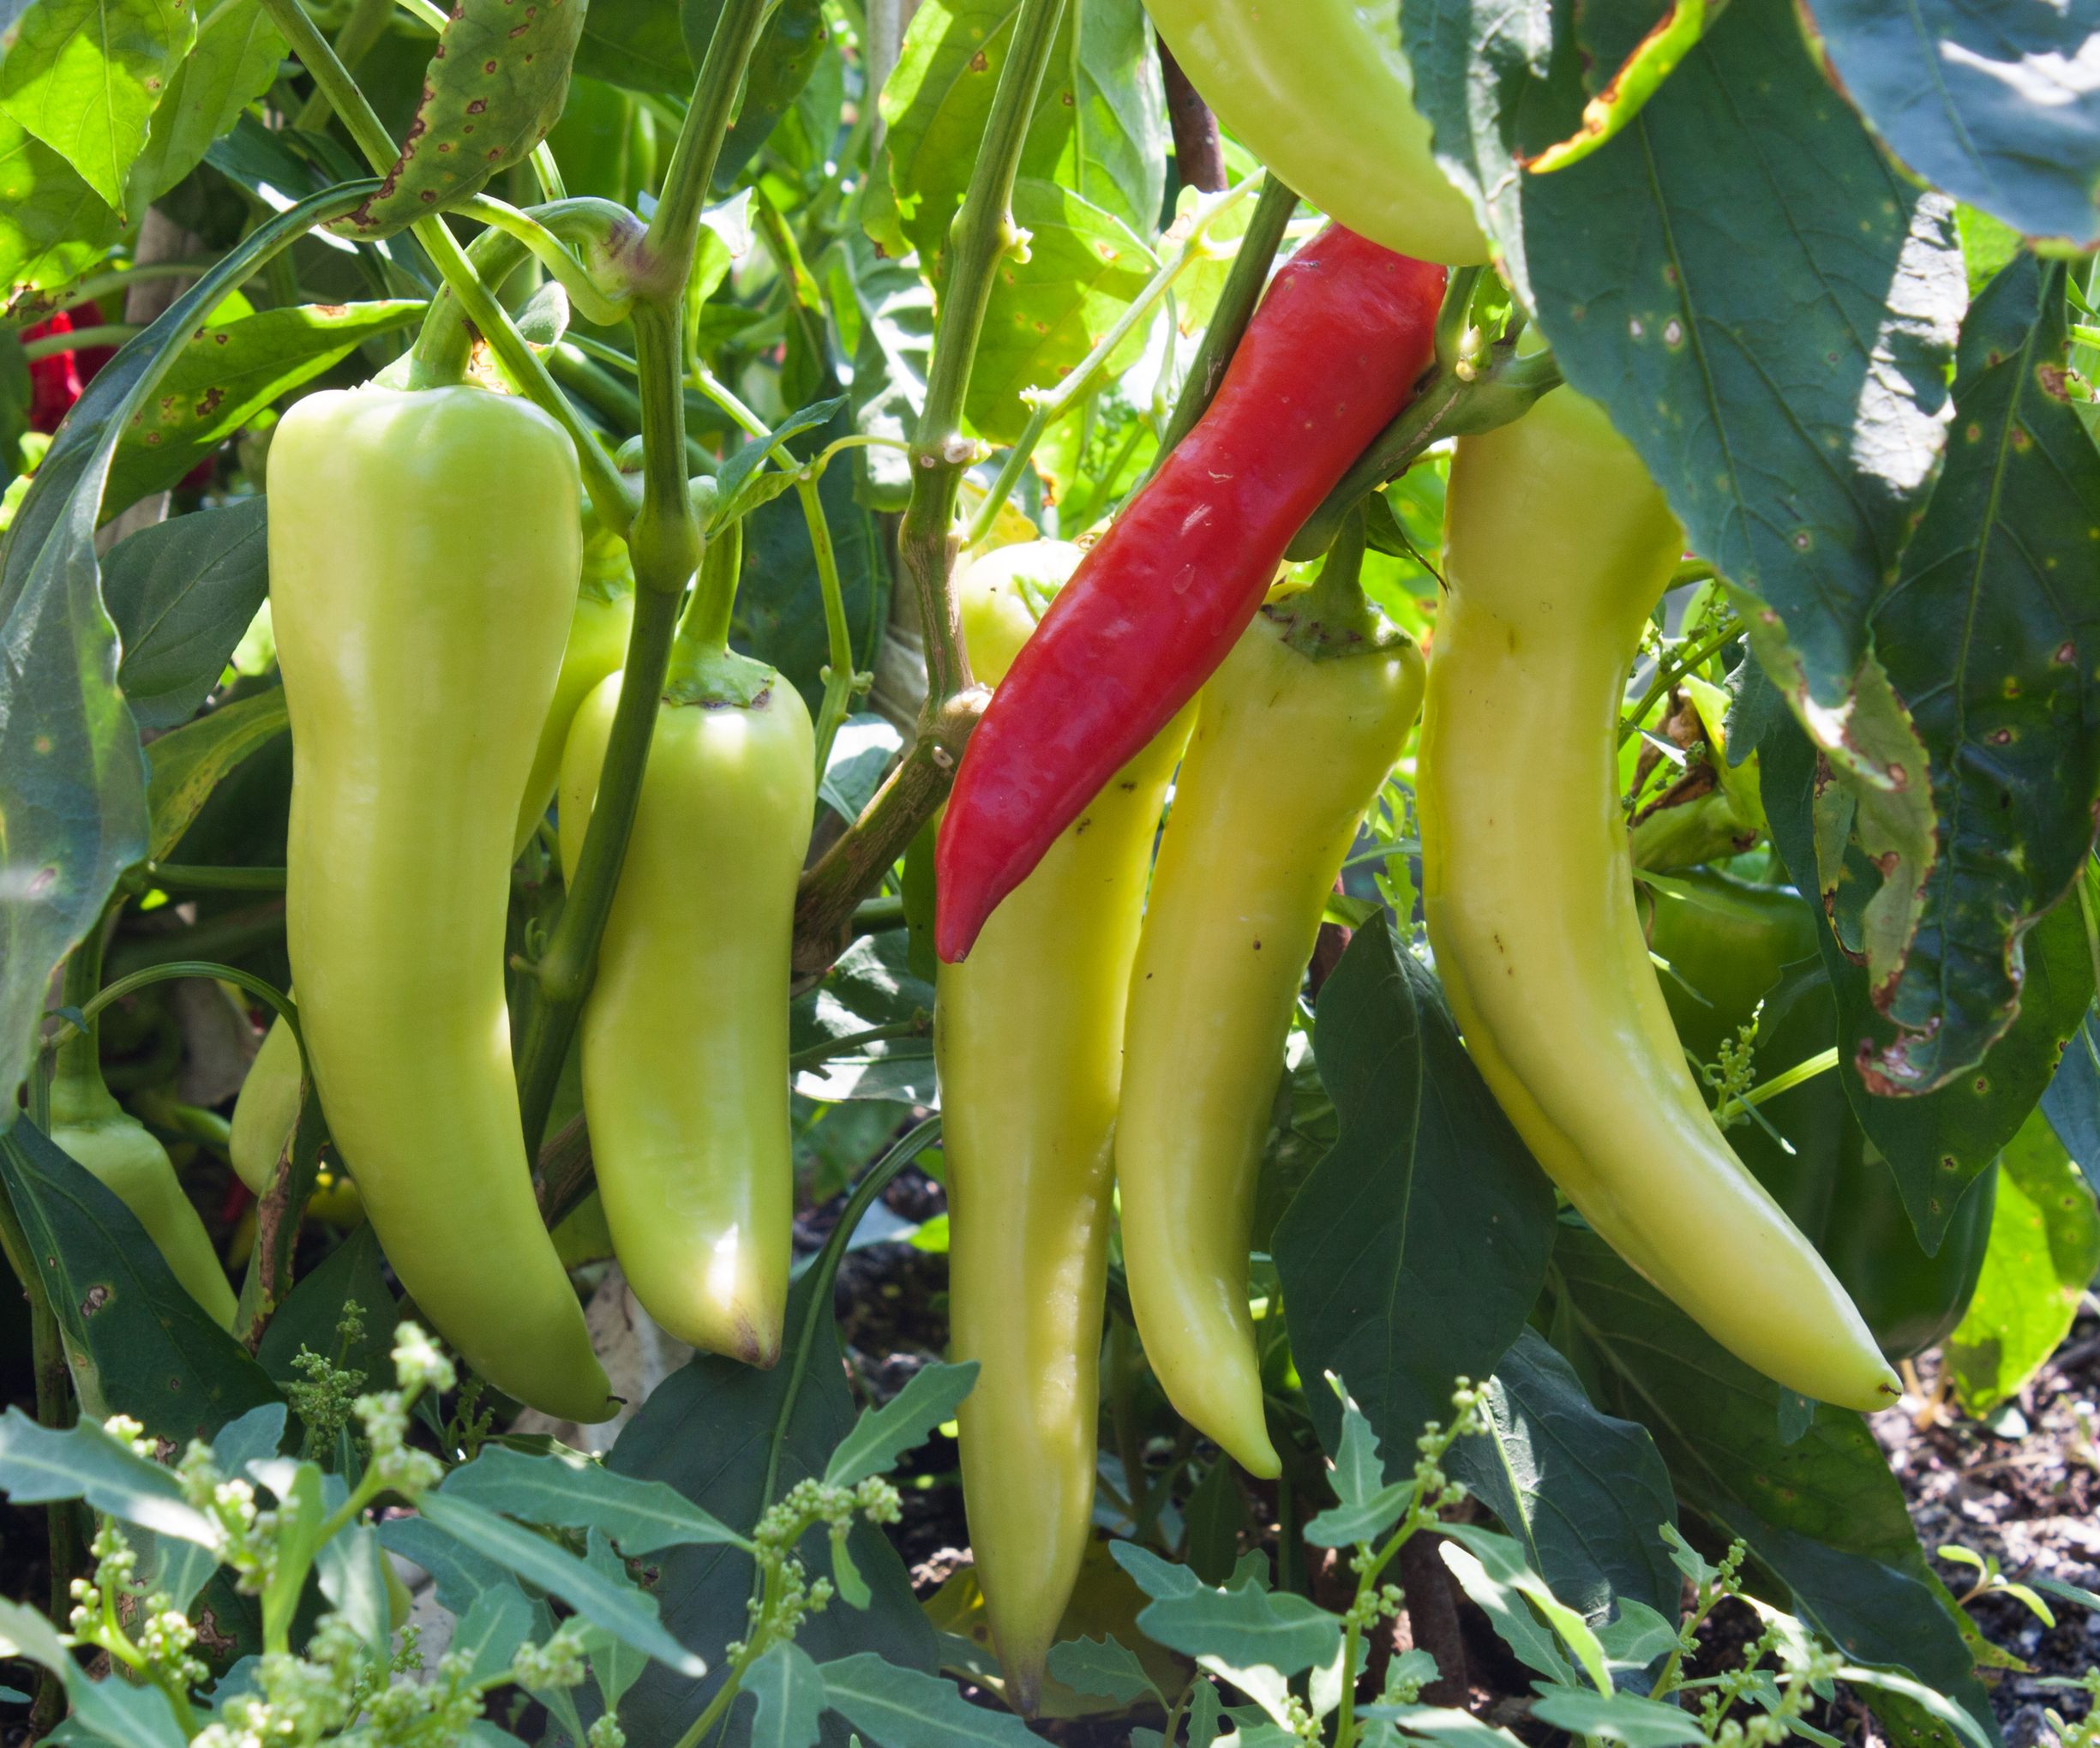 5 Tips for Harvesting Banana Peppers